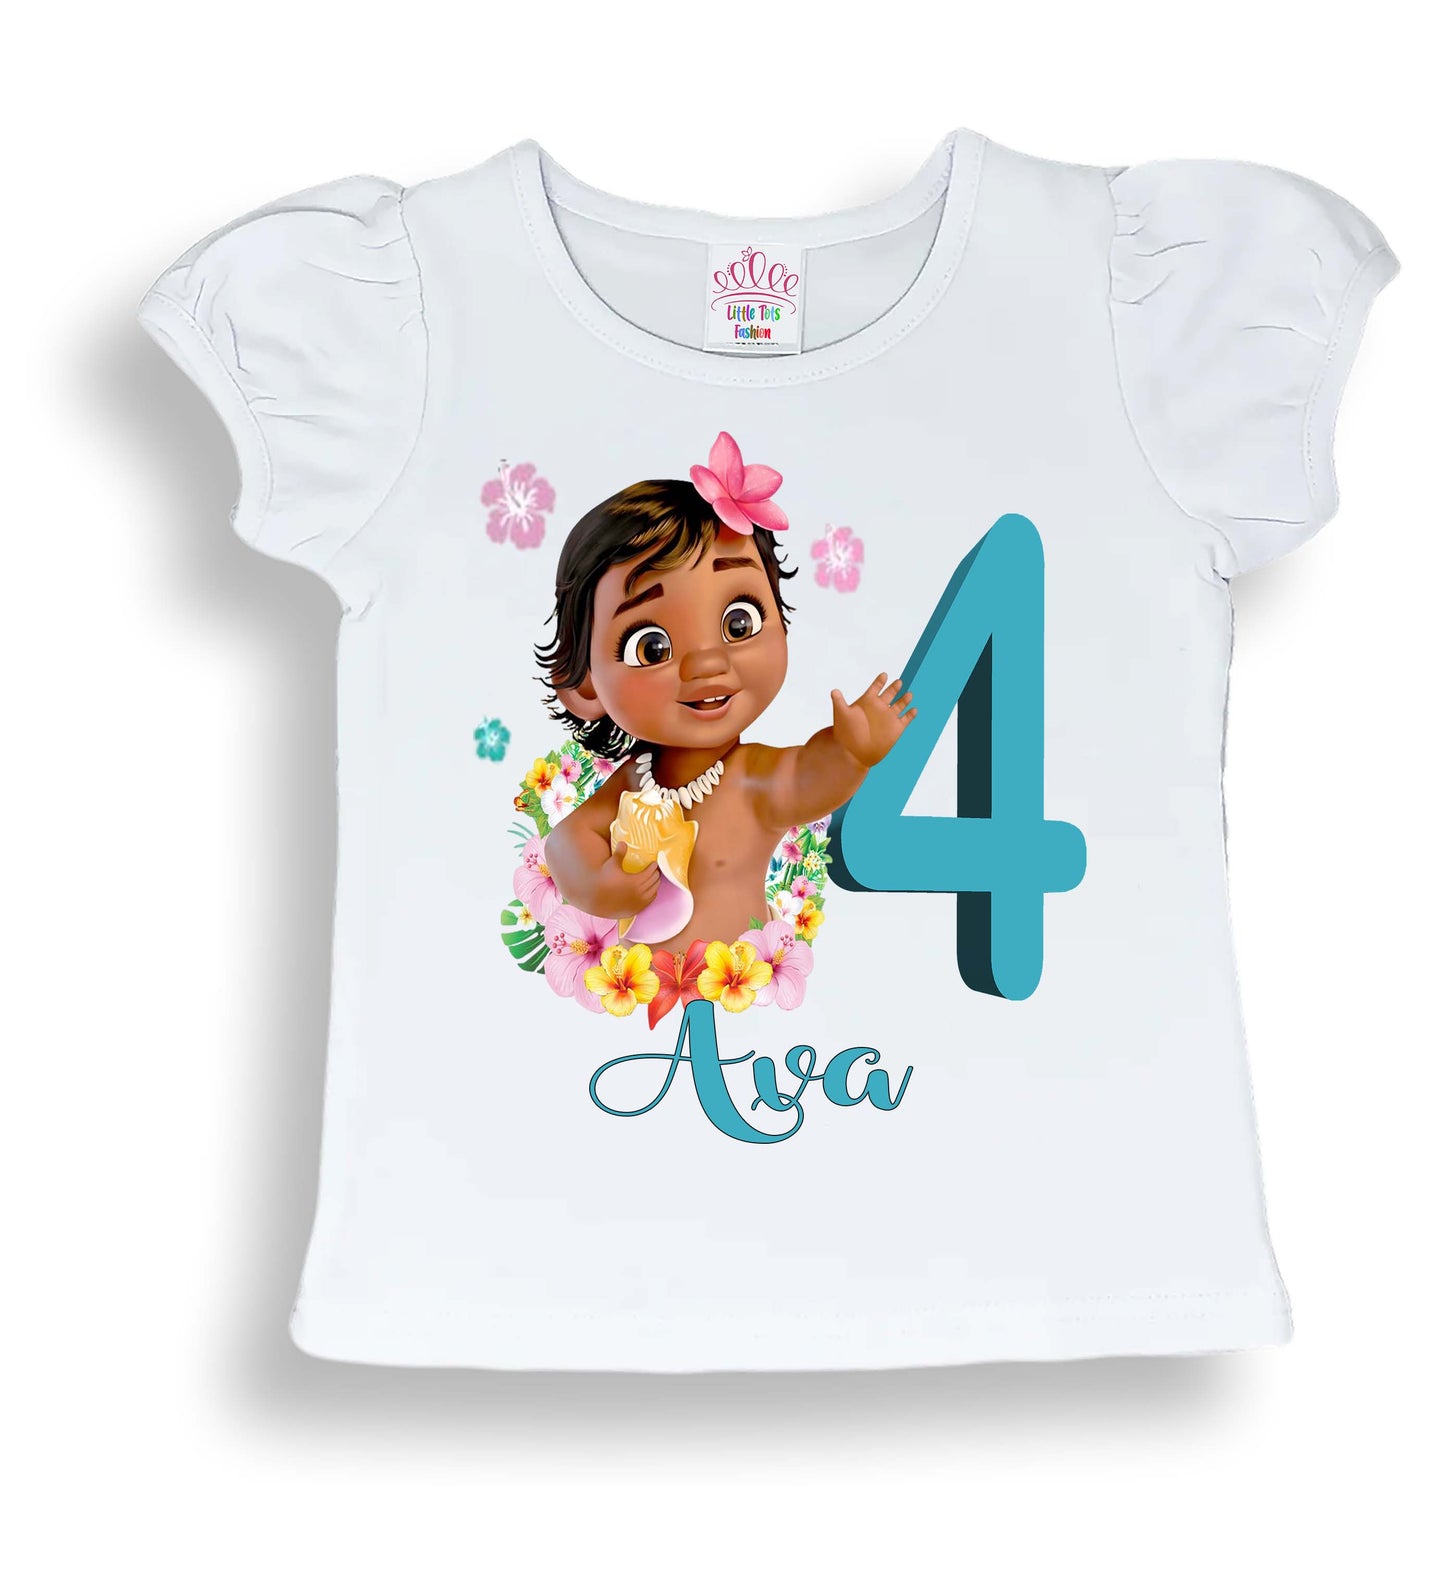 Moana birthday shirt |  baby  moana shirt | personalized moana shirt |  toddler baby moana shirts | personalized shirts